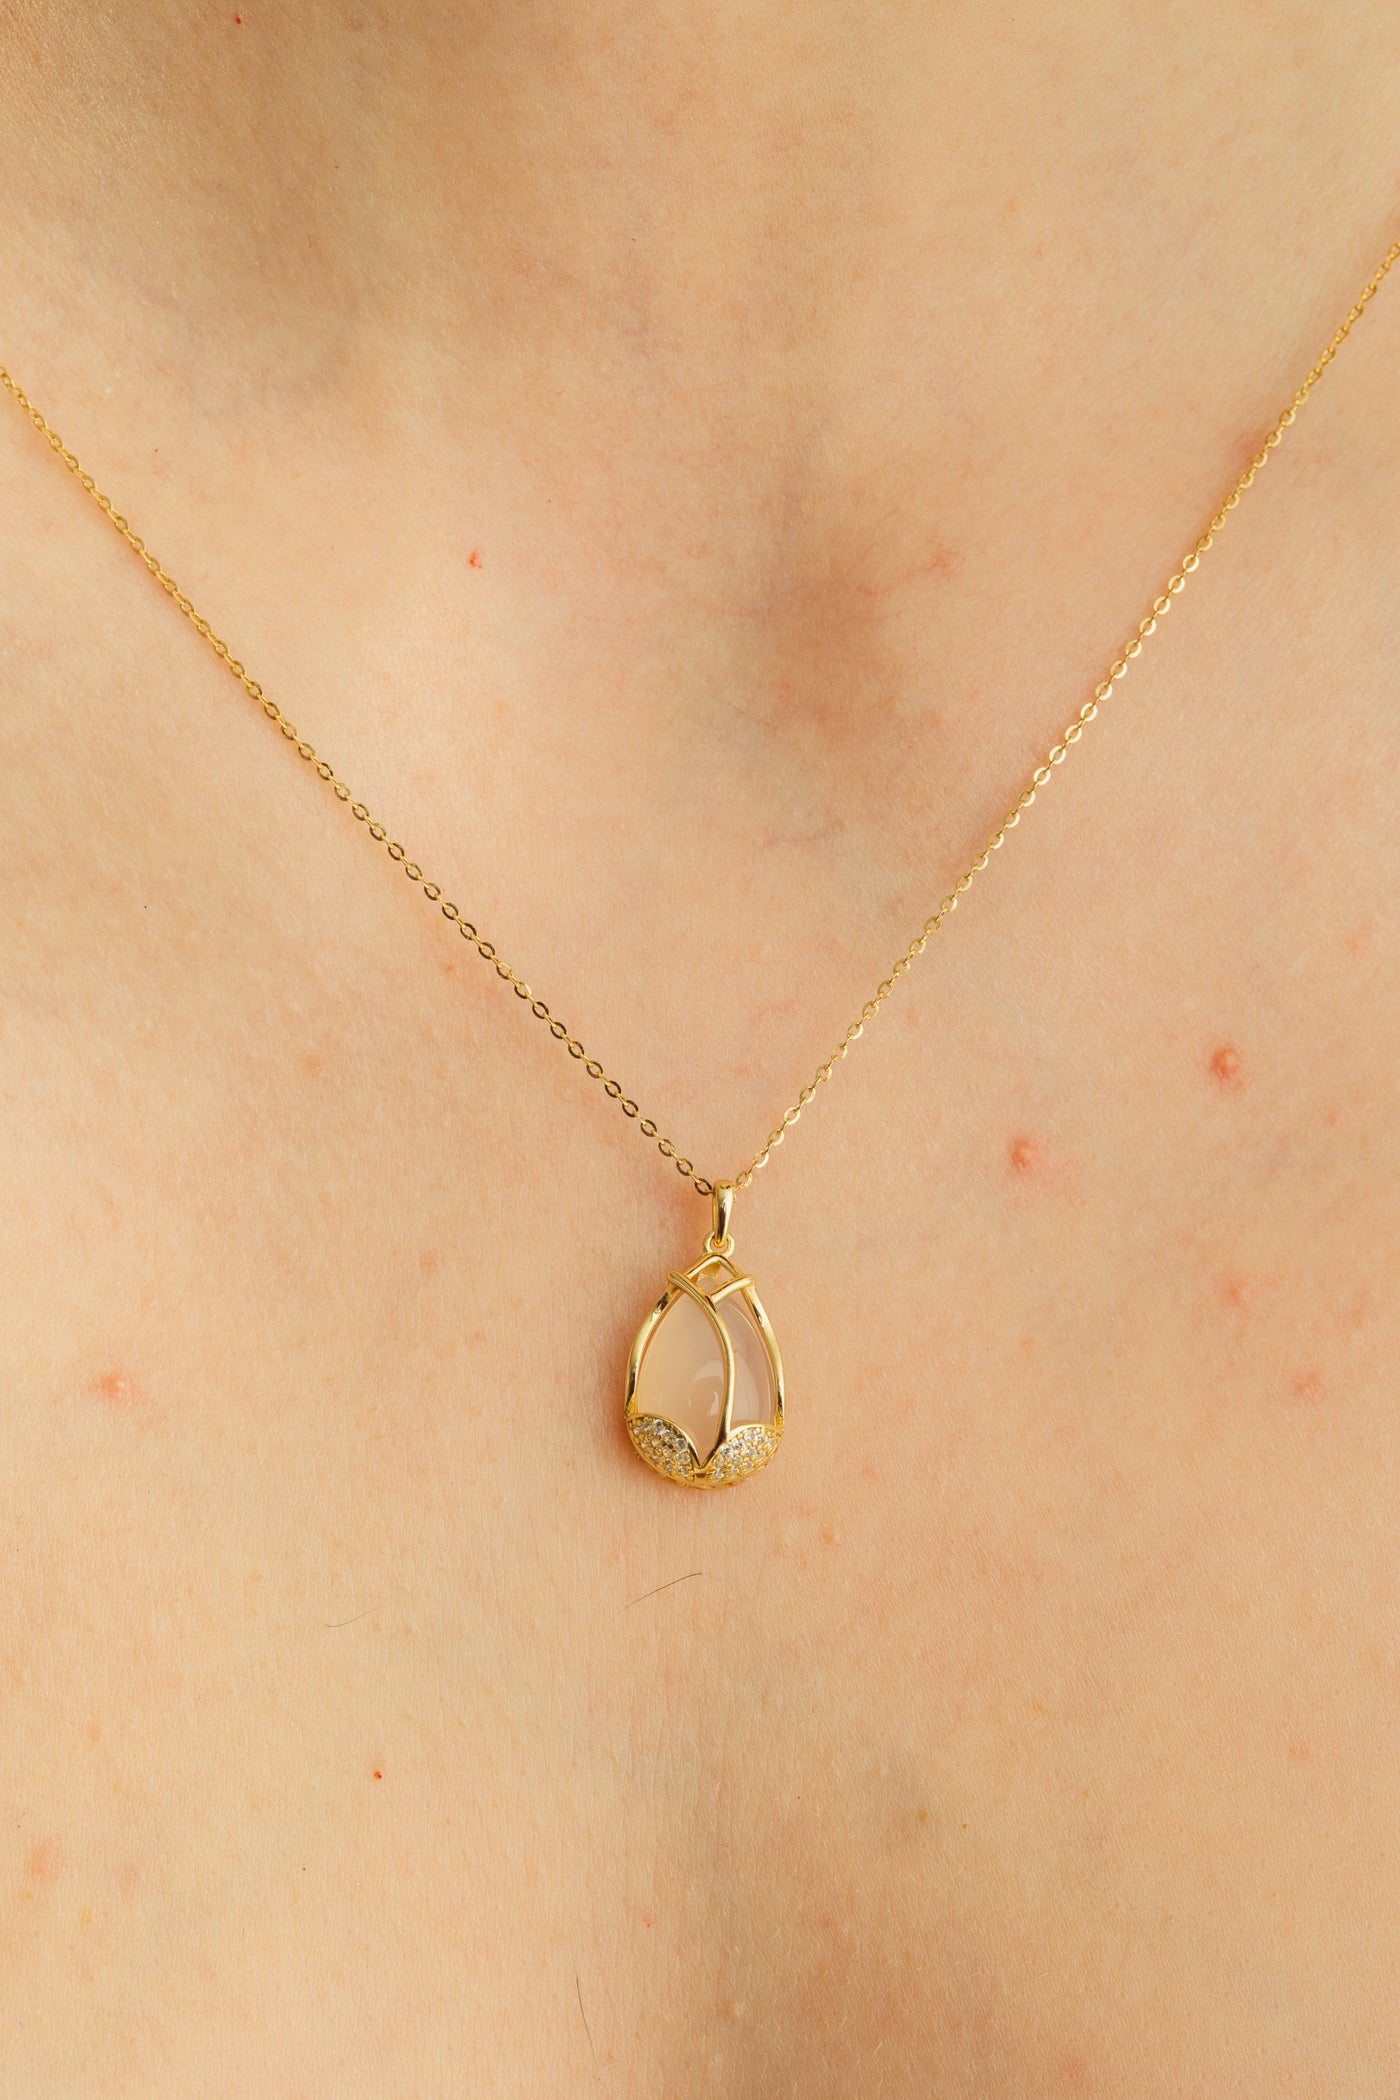 Rosebud Gold Necklace